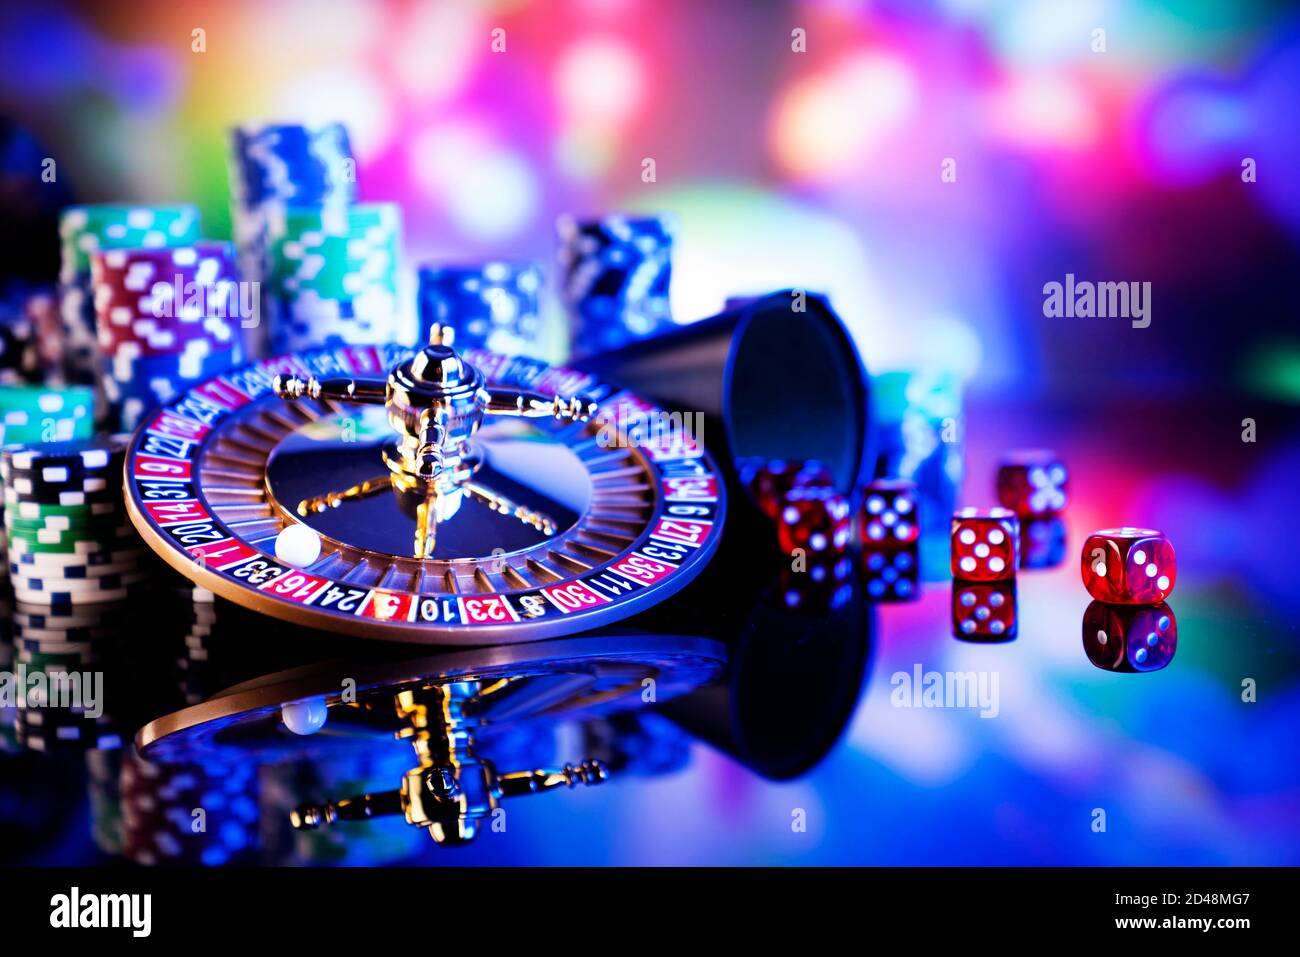 Từ xúc xắc đến bánh xe casino, sòng bạc là một khái niệm thật là tuyệt vời. Sự kết hợp giữa các yếu tố như chip poker và đồ cờ bạc thực sự tạo nên một điểm nhấn rực rỡ trong cuộc sống. Cùng chiêm ngưỡng những hình ảnh sáng chói này, và bạn sẽ có những trải nghiệm đặc biệt nhất.